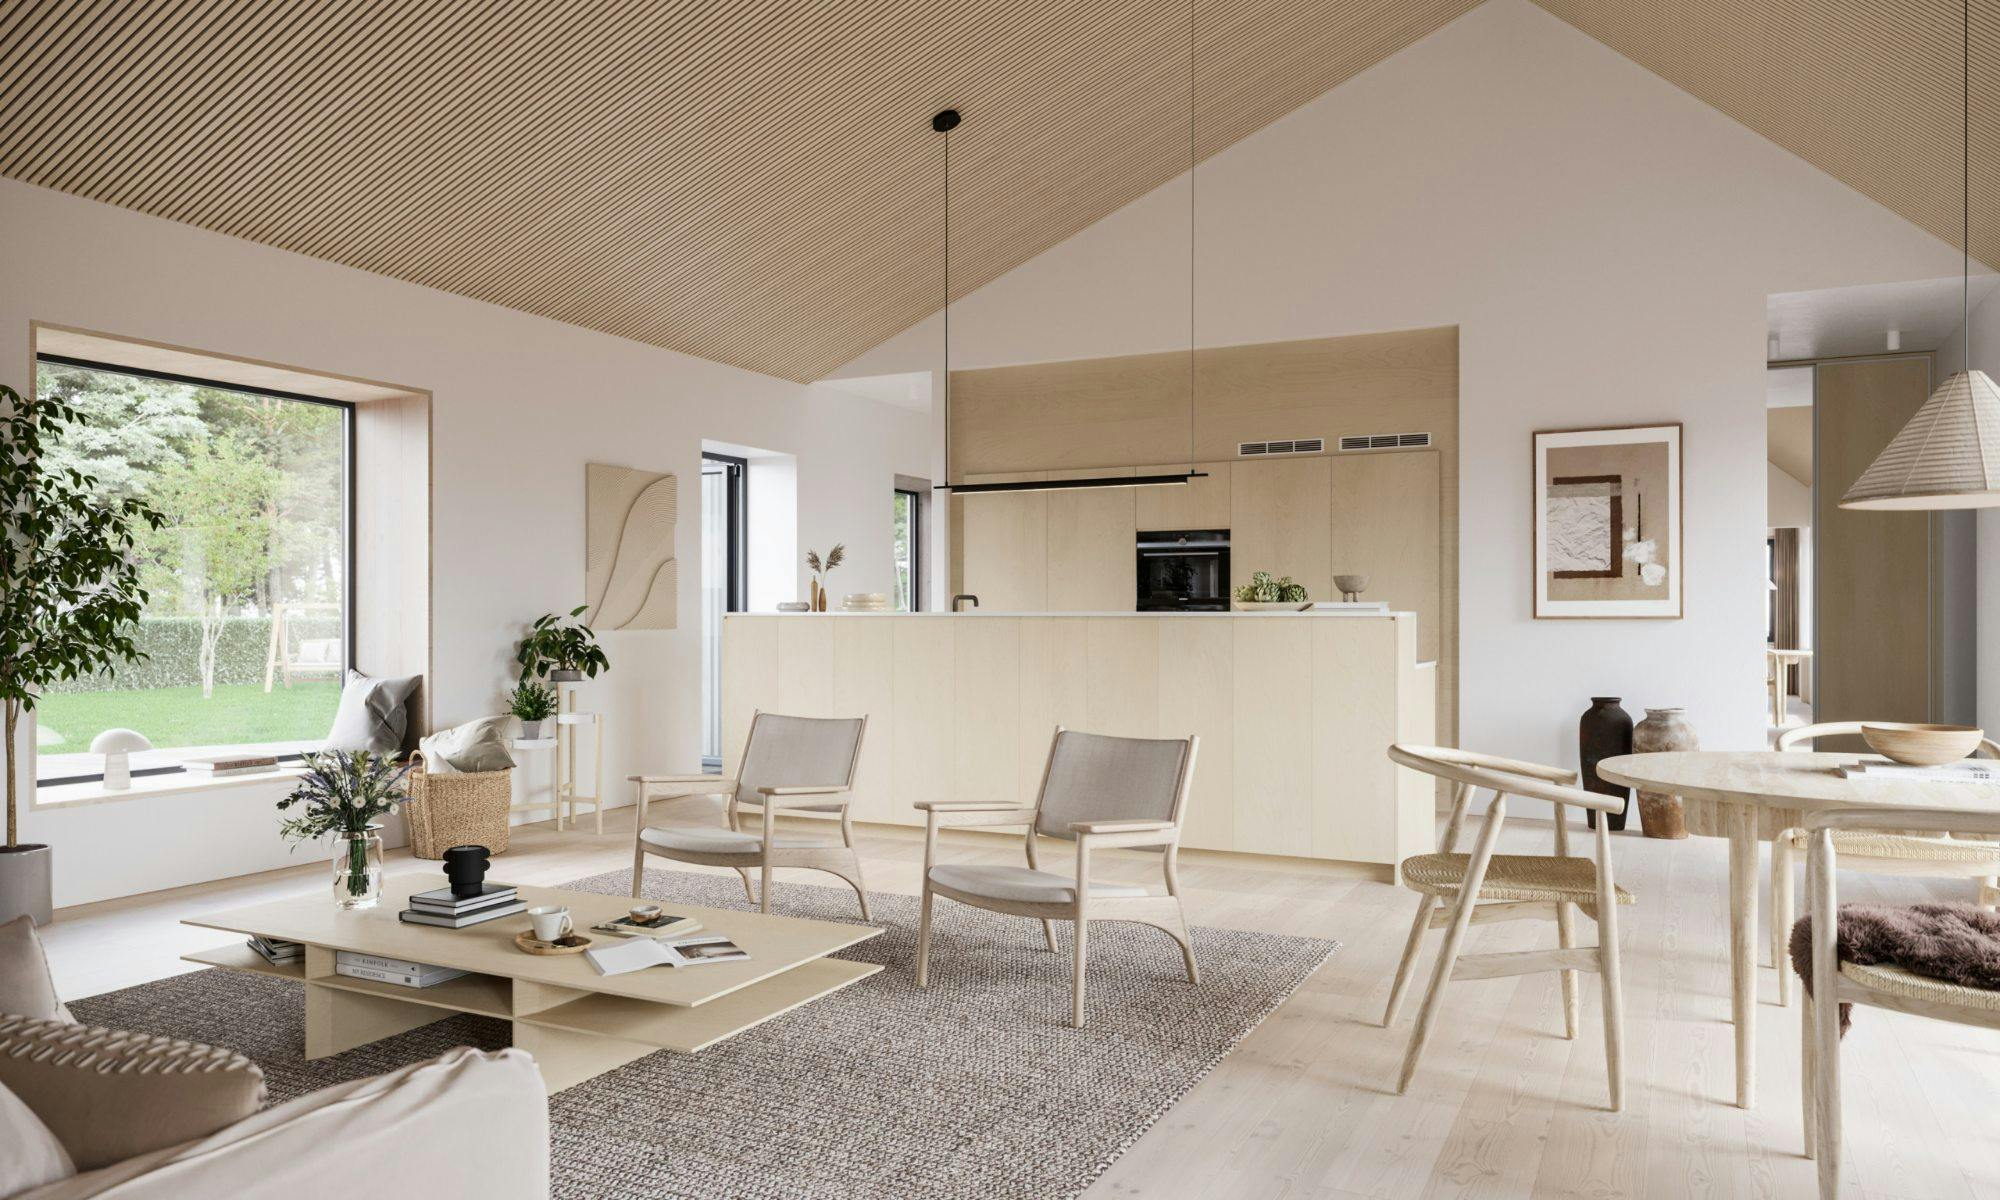 Numéro d'image 43 de la section actuelle de A Scandifornian home with a bright and elegant kitchen de Cosentino France